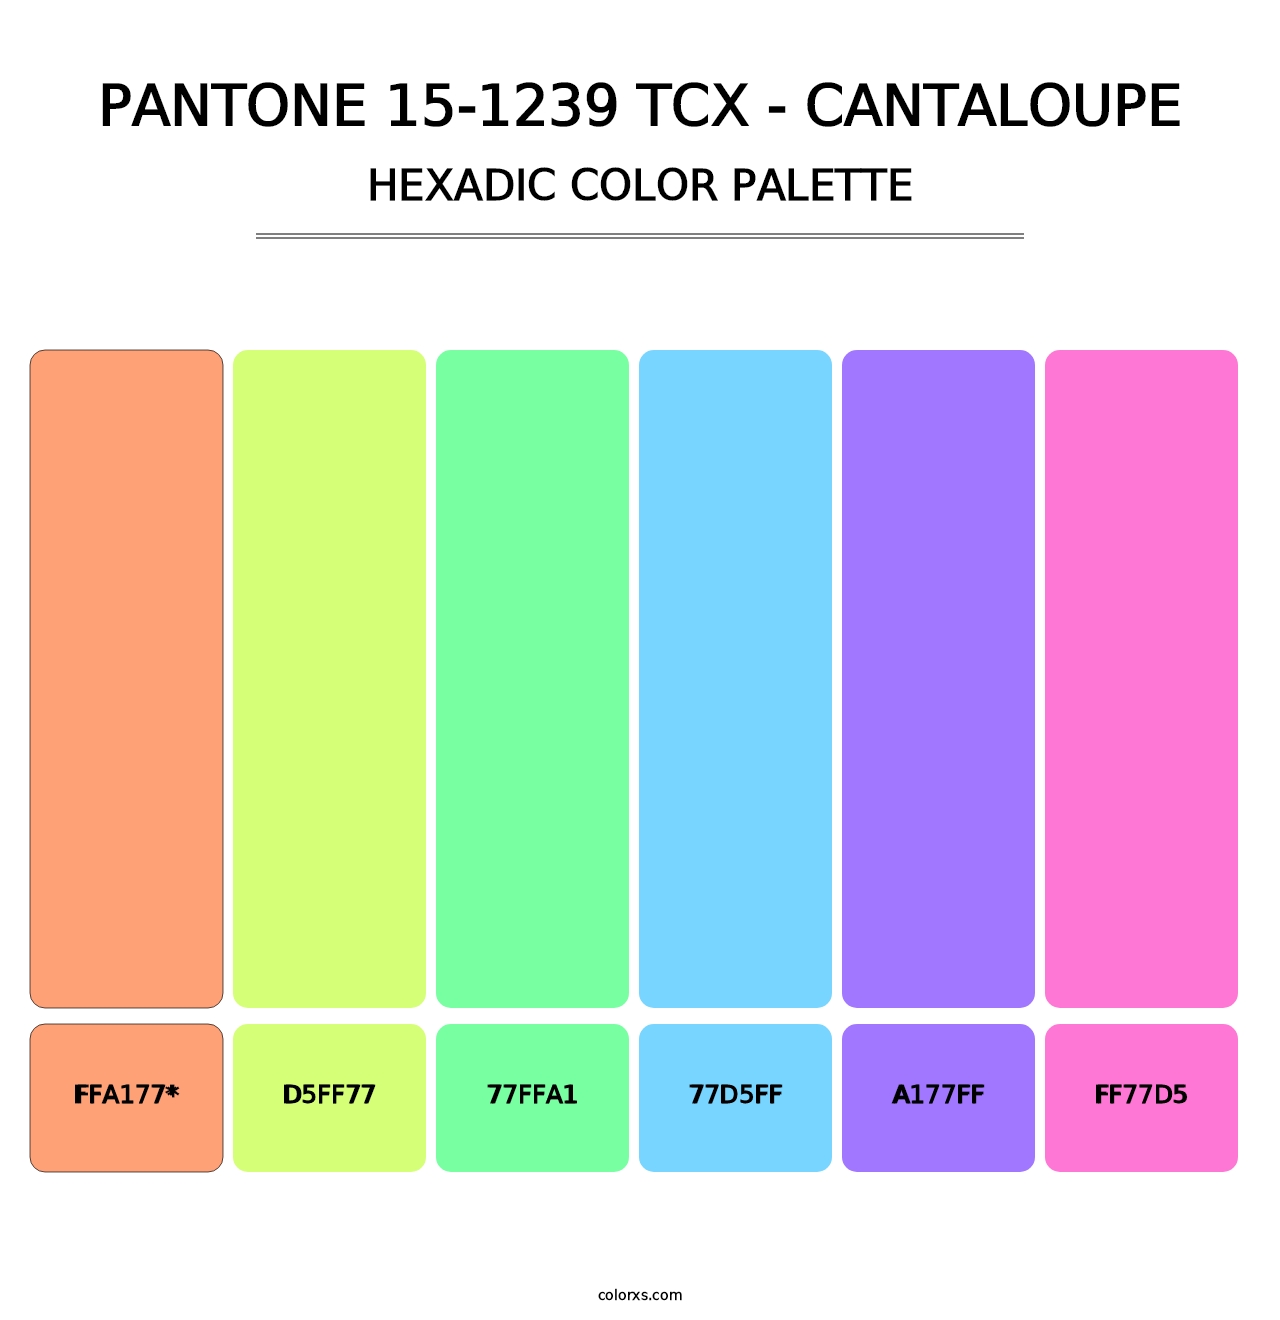 PANTONE 15-1239 TCX - Cantaloupe - Hexadic Color Palette